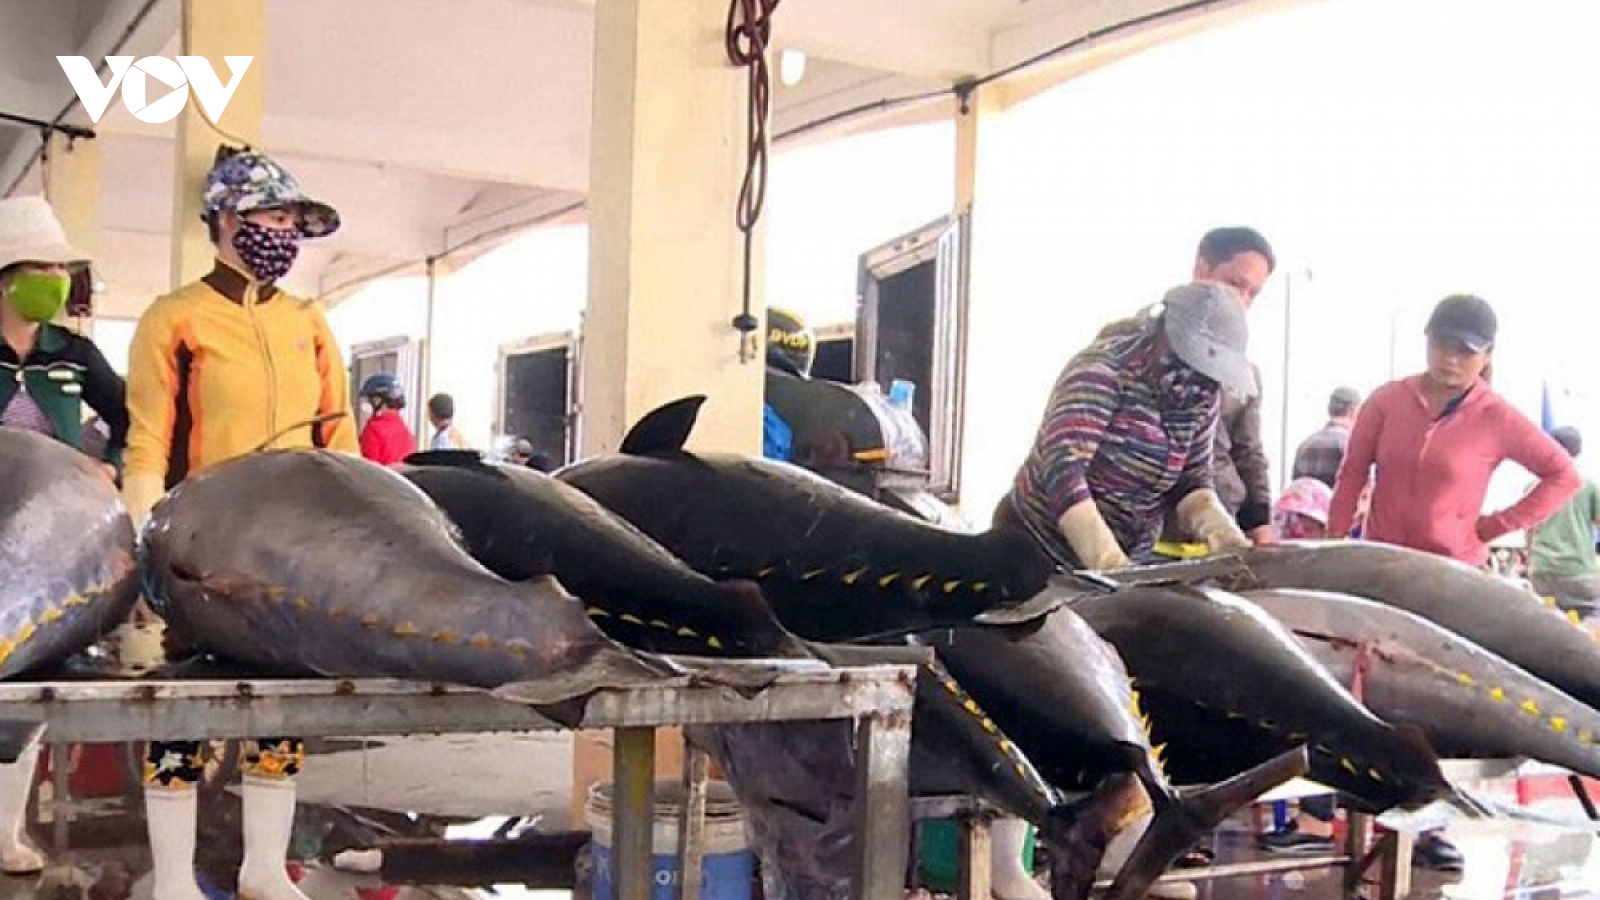 Phải chấm dứt tình trạng tàu cá khai thác hải sản bất hợp pháp